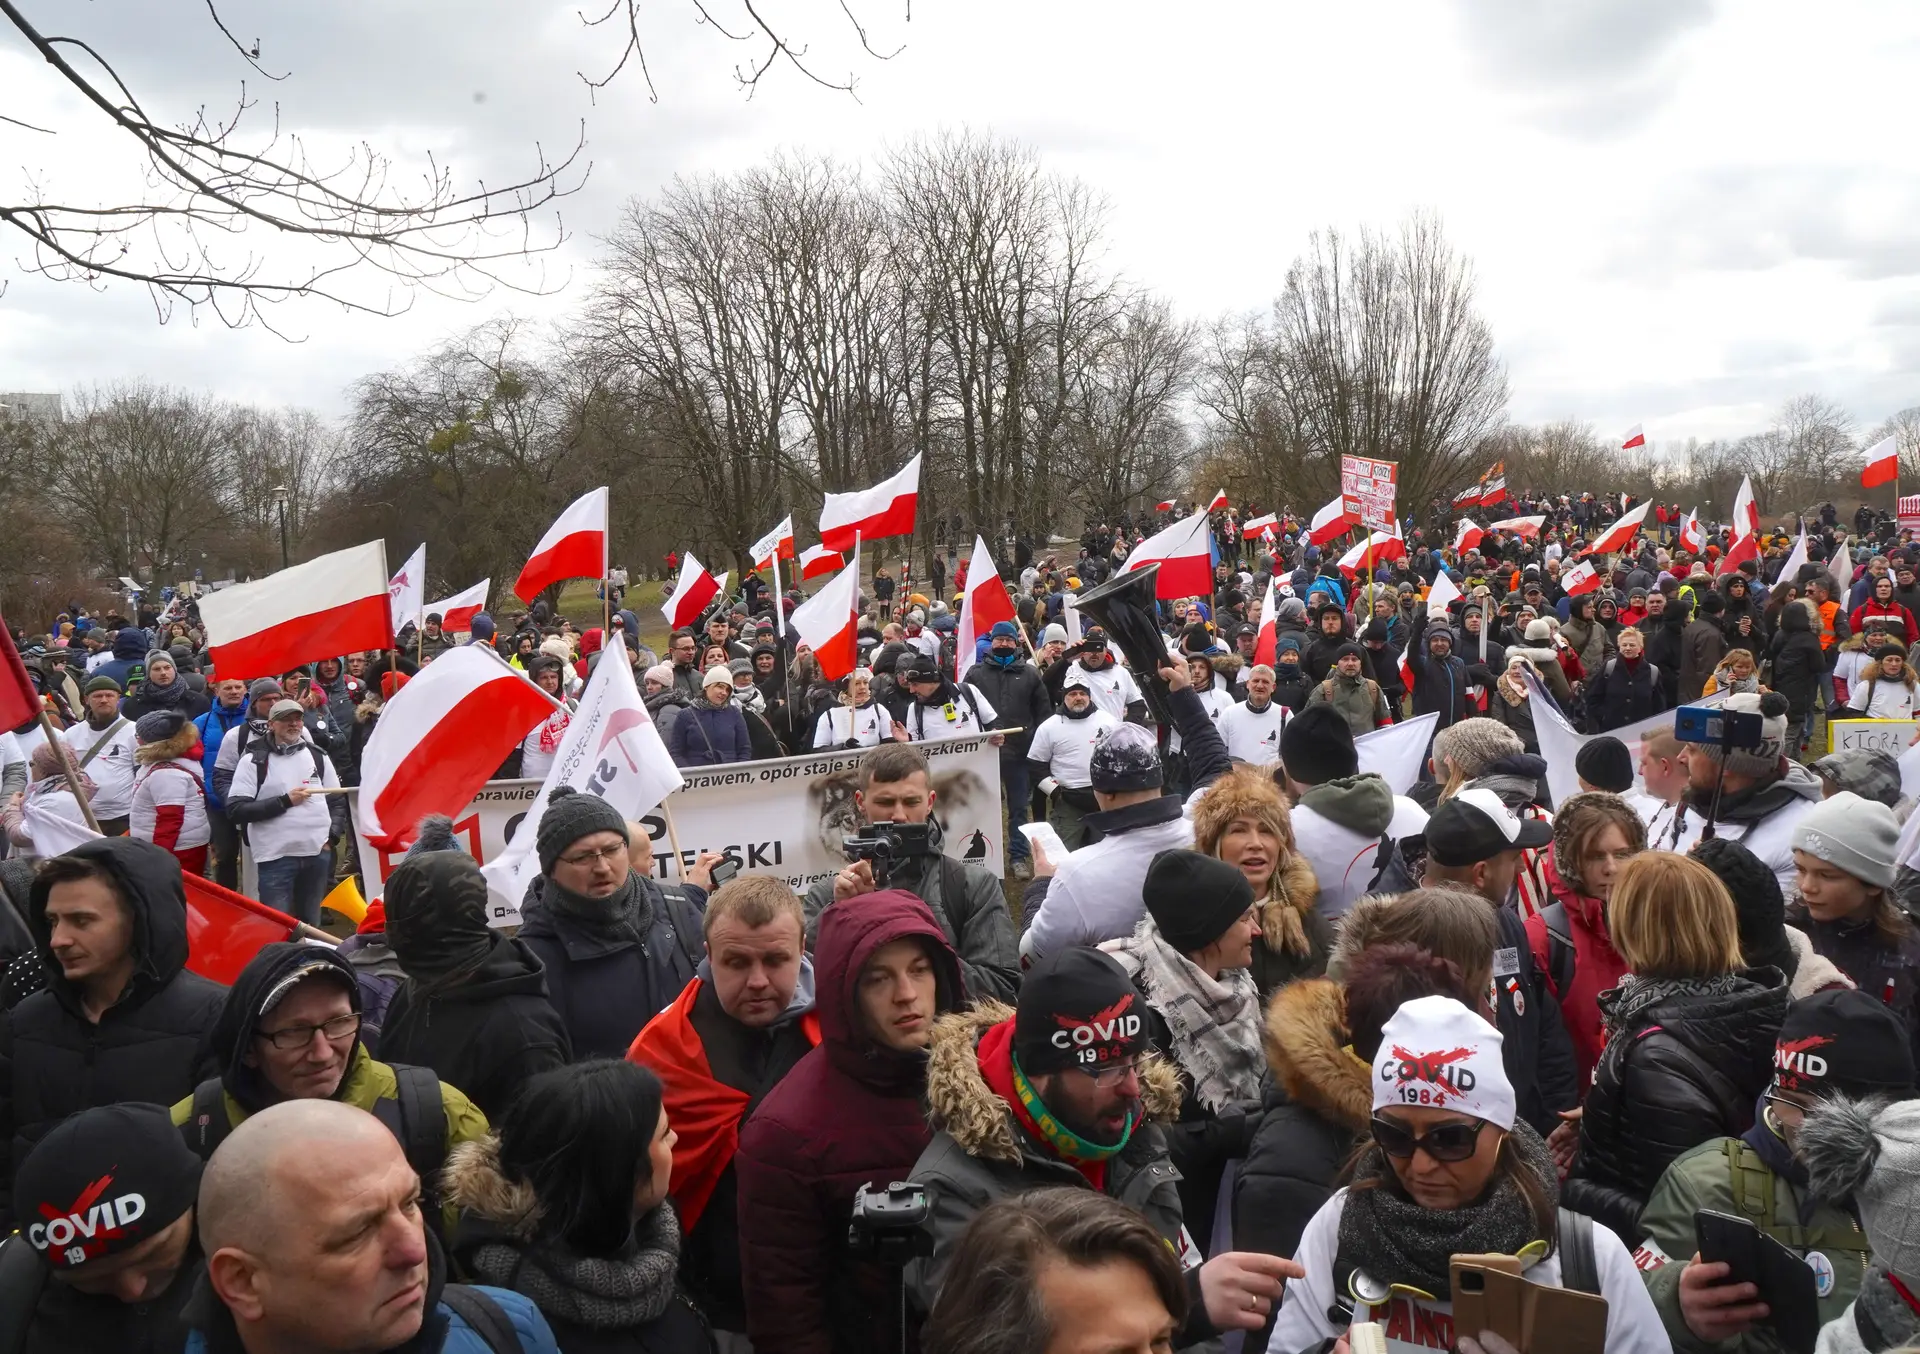 Muitas bandeiras da Polónia, zero máscaras, ausência de preocupação com distanciamento físico, neste protesto em Varsóvia